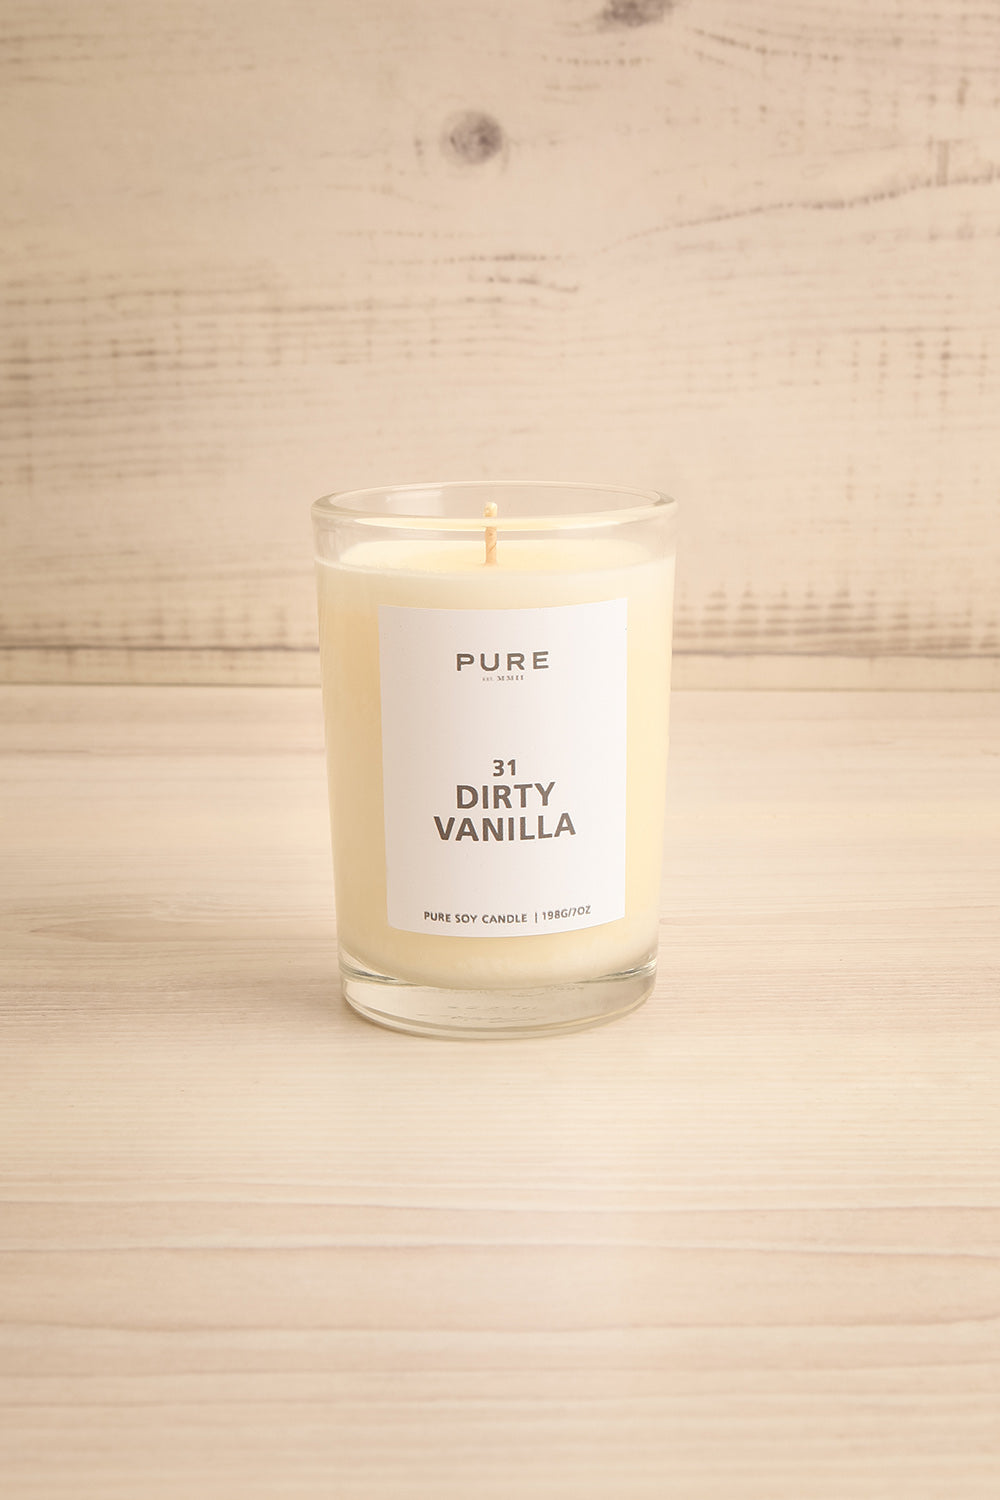 Dirty Vanilla Candle | Maison garçonne 